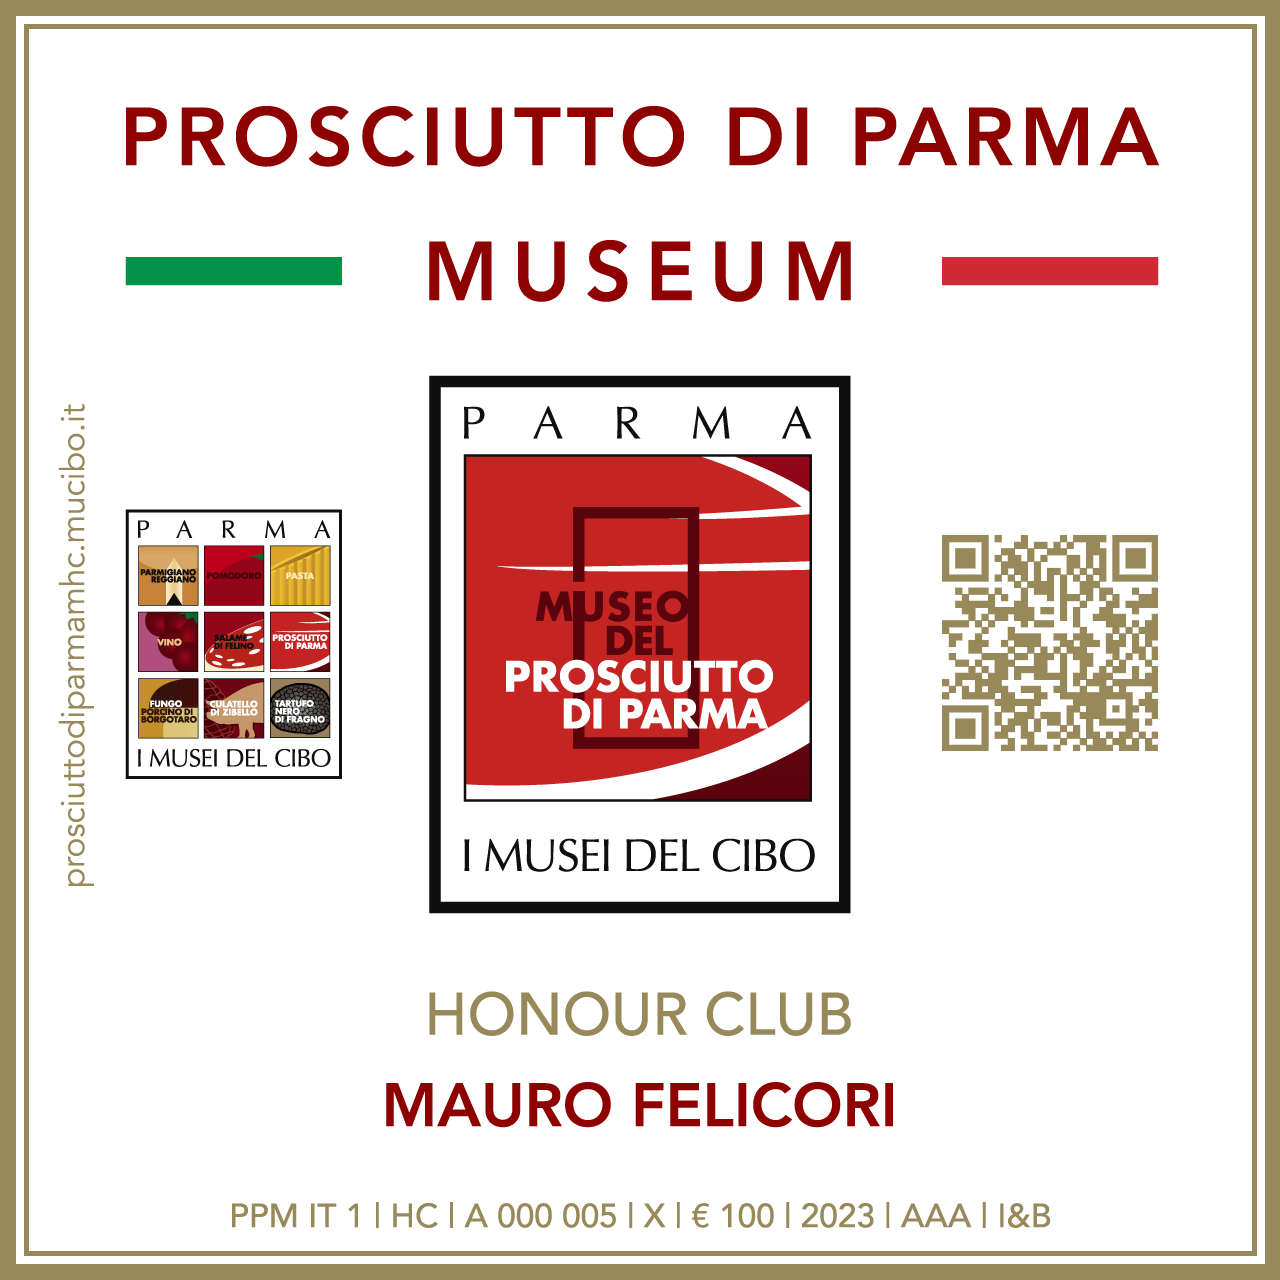 Prosciutto di Parma Museum Honour Club - Token Id A 000 005 - MAURO FELICORI